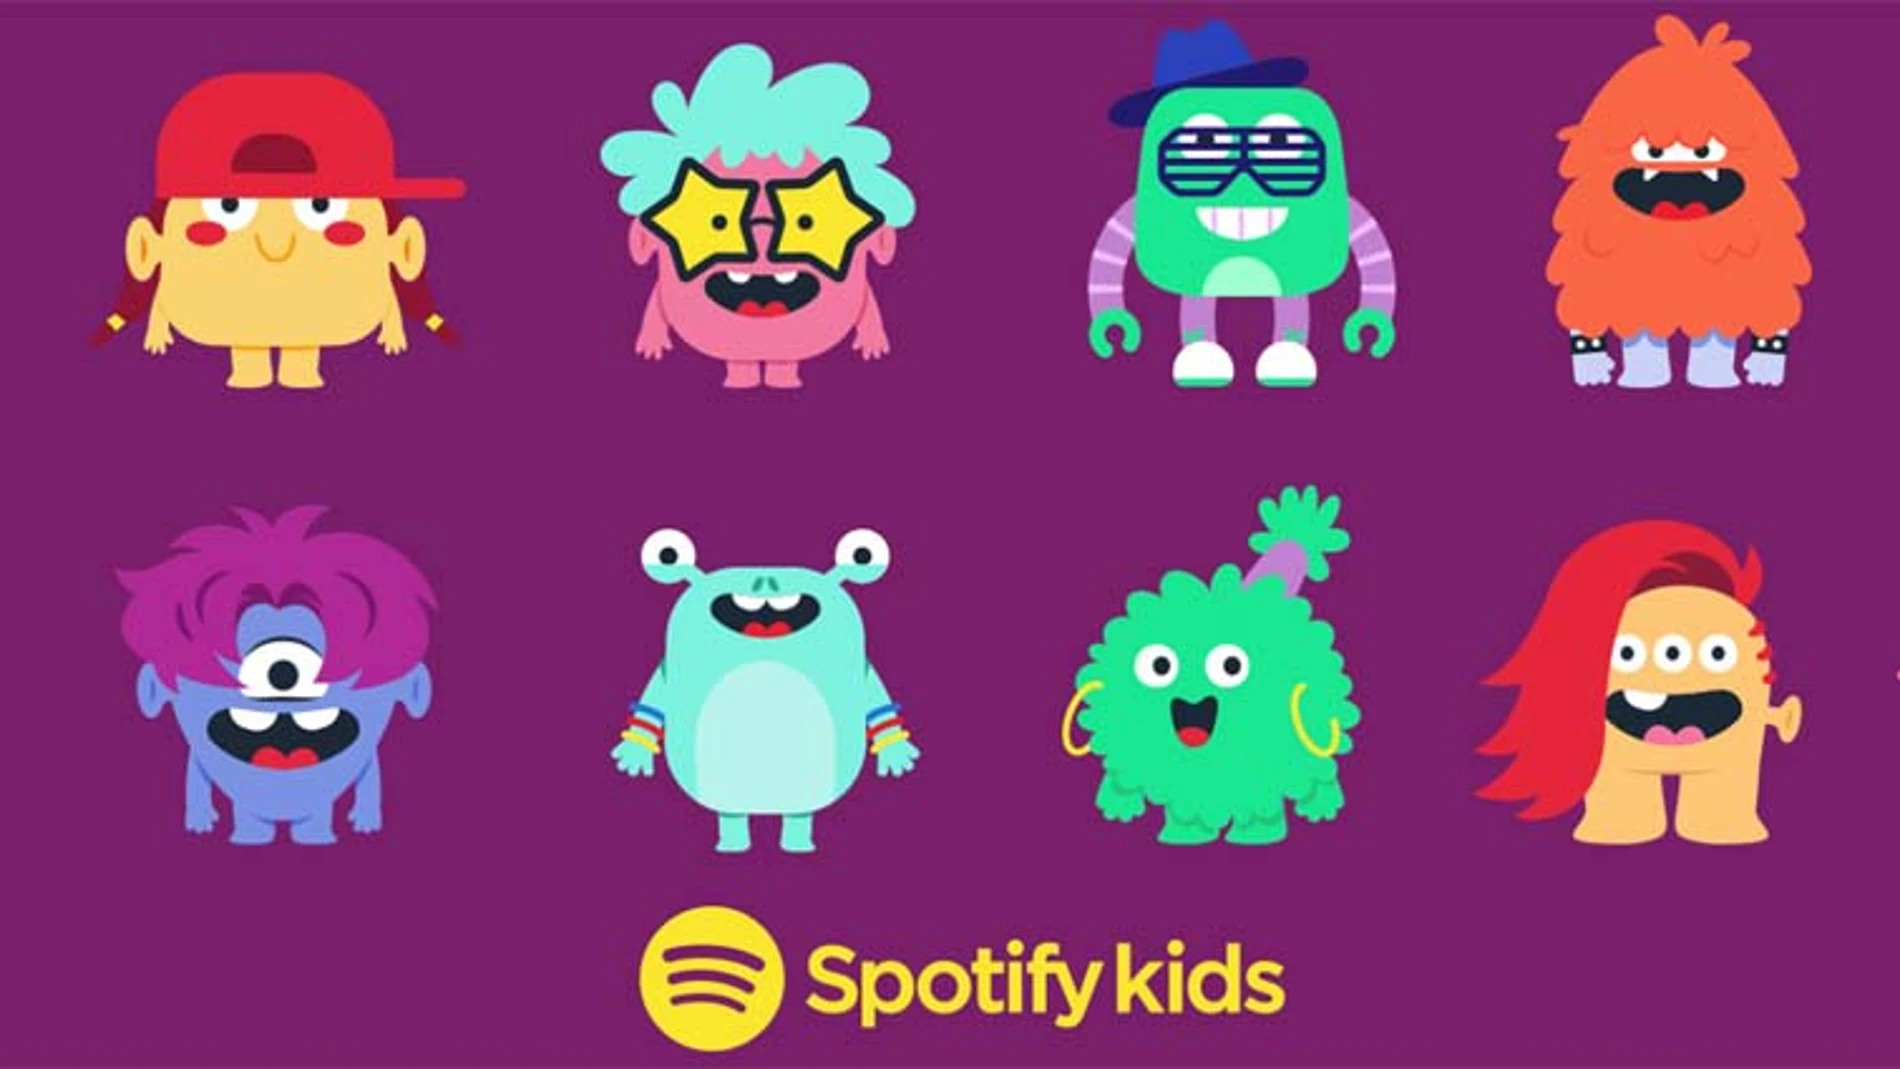 La versión Spotify para niños inicia sus pruebas en beta en Irlanda y luego se extenderá a otros países con la modalidad Plan Familiar Premium.